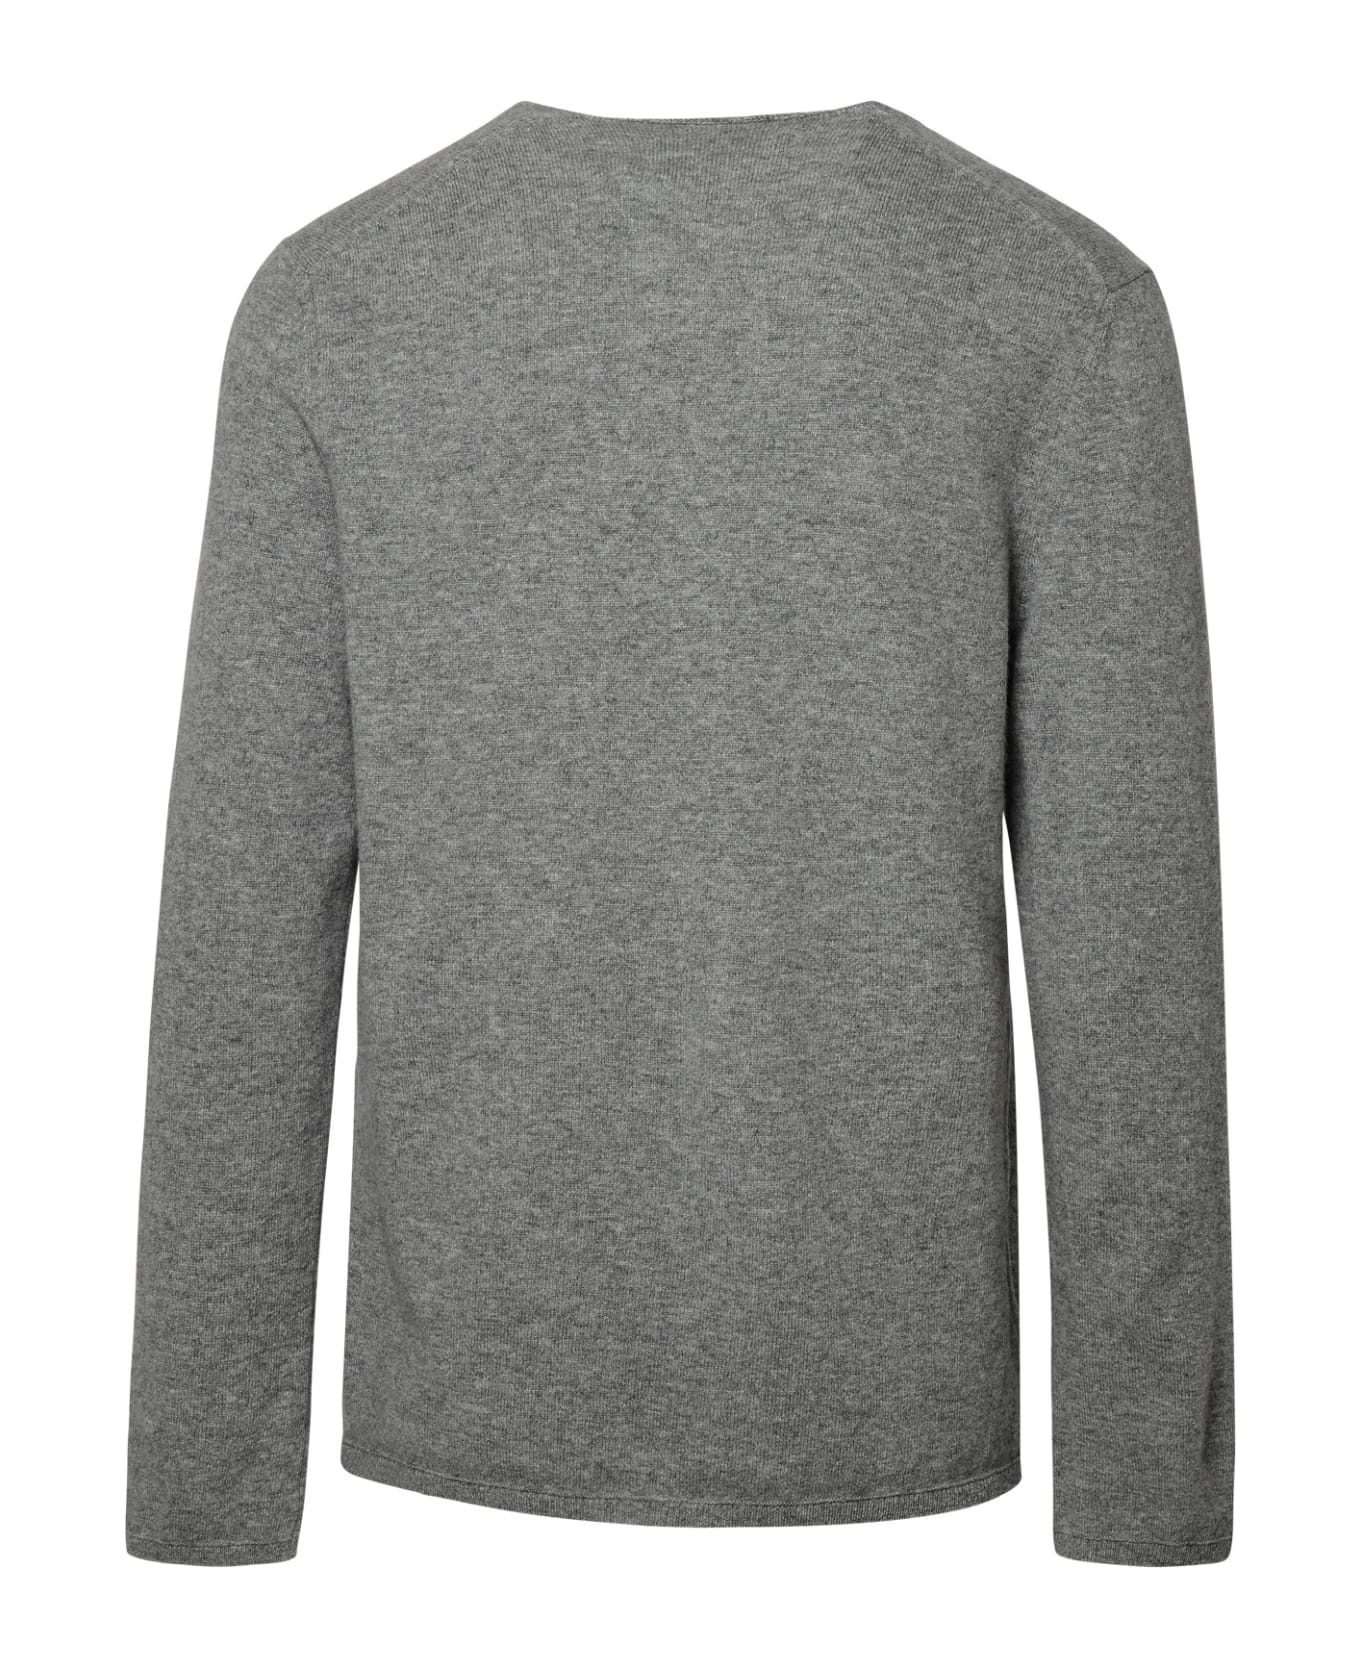 Comme des Garçons Shirt Boy Grey Wool Sweater - Grey